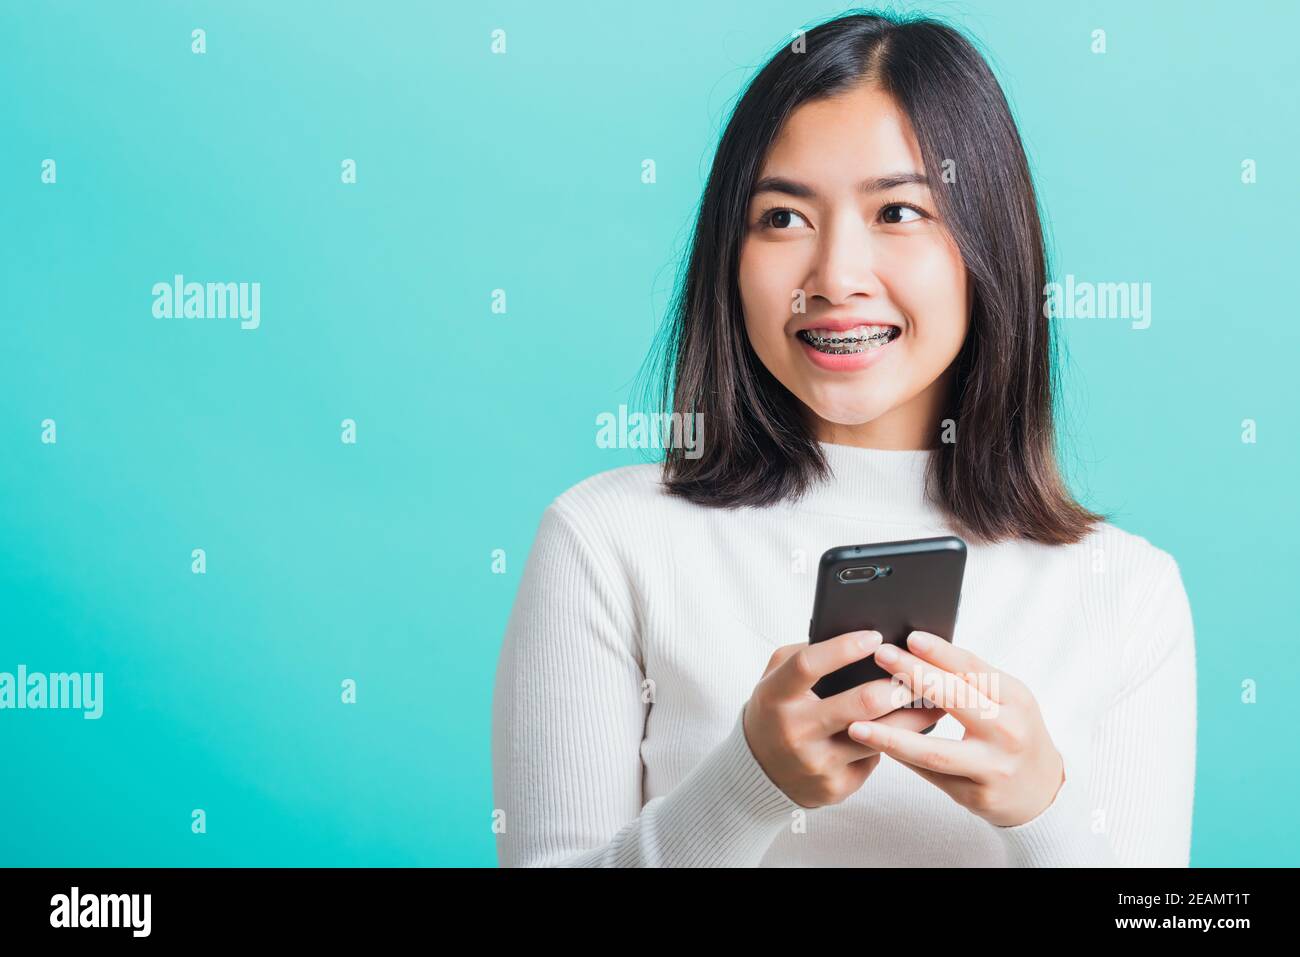 une femme sourit qu'elle tient et tape un message texte Banque D'Images